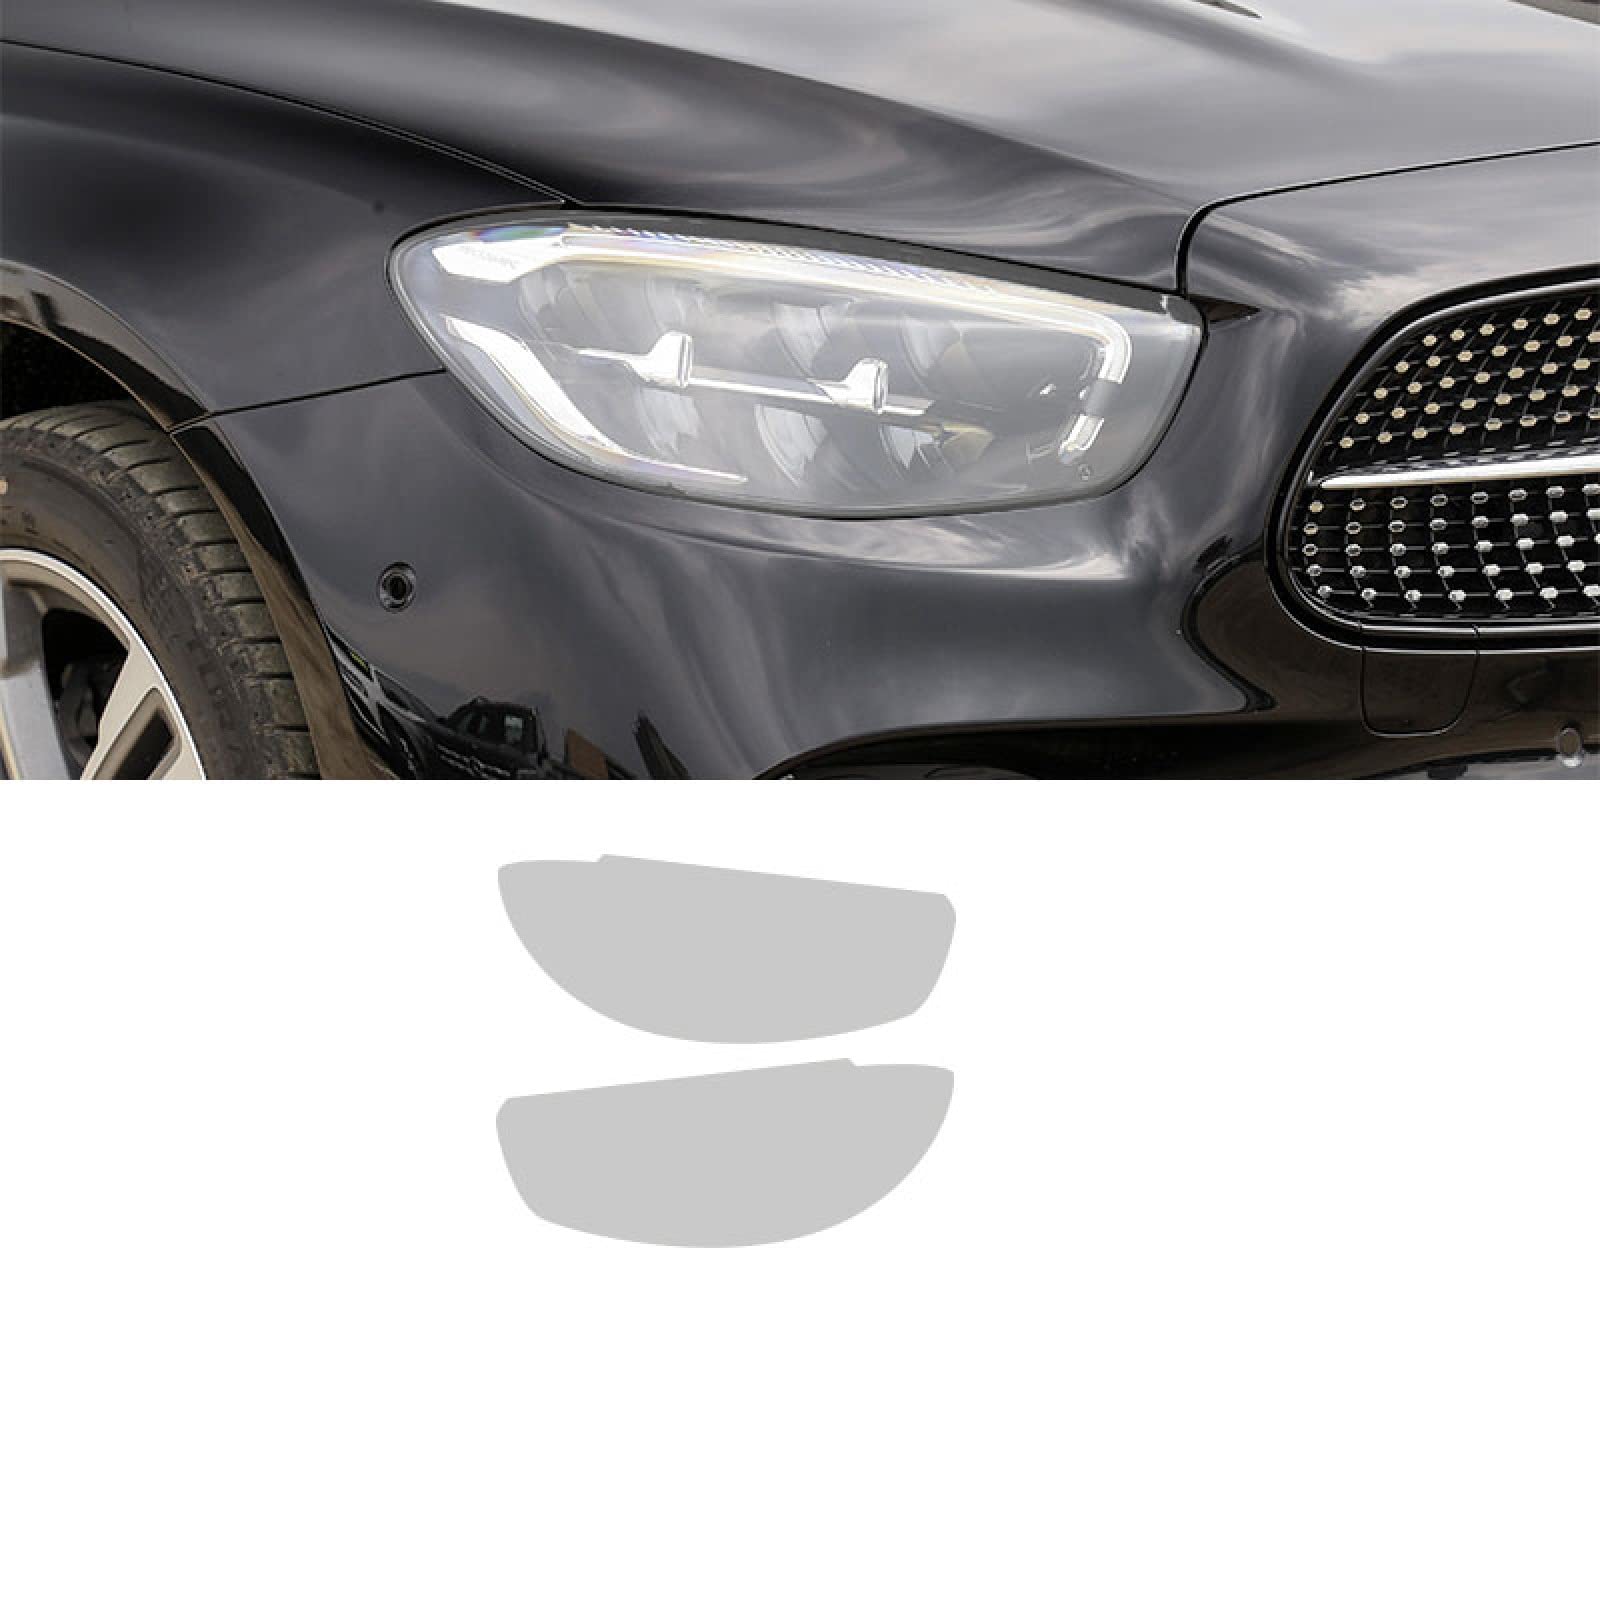 Auto Scheinwerfer Schutz Film Geraucht Schwarz Tint Wrap Vinyl Transparent TPU Aufkleber,Für Mercedes Benz E Klasse Facelift W213 2021 von YSLR